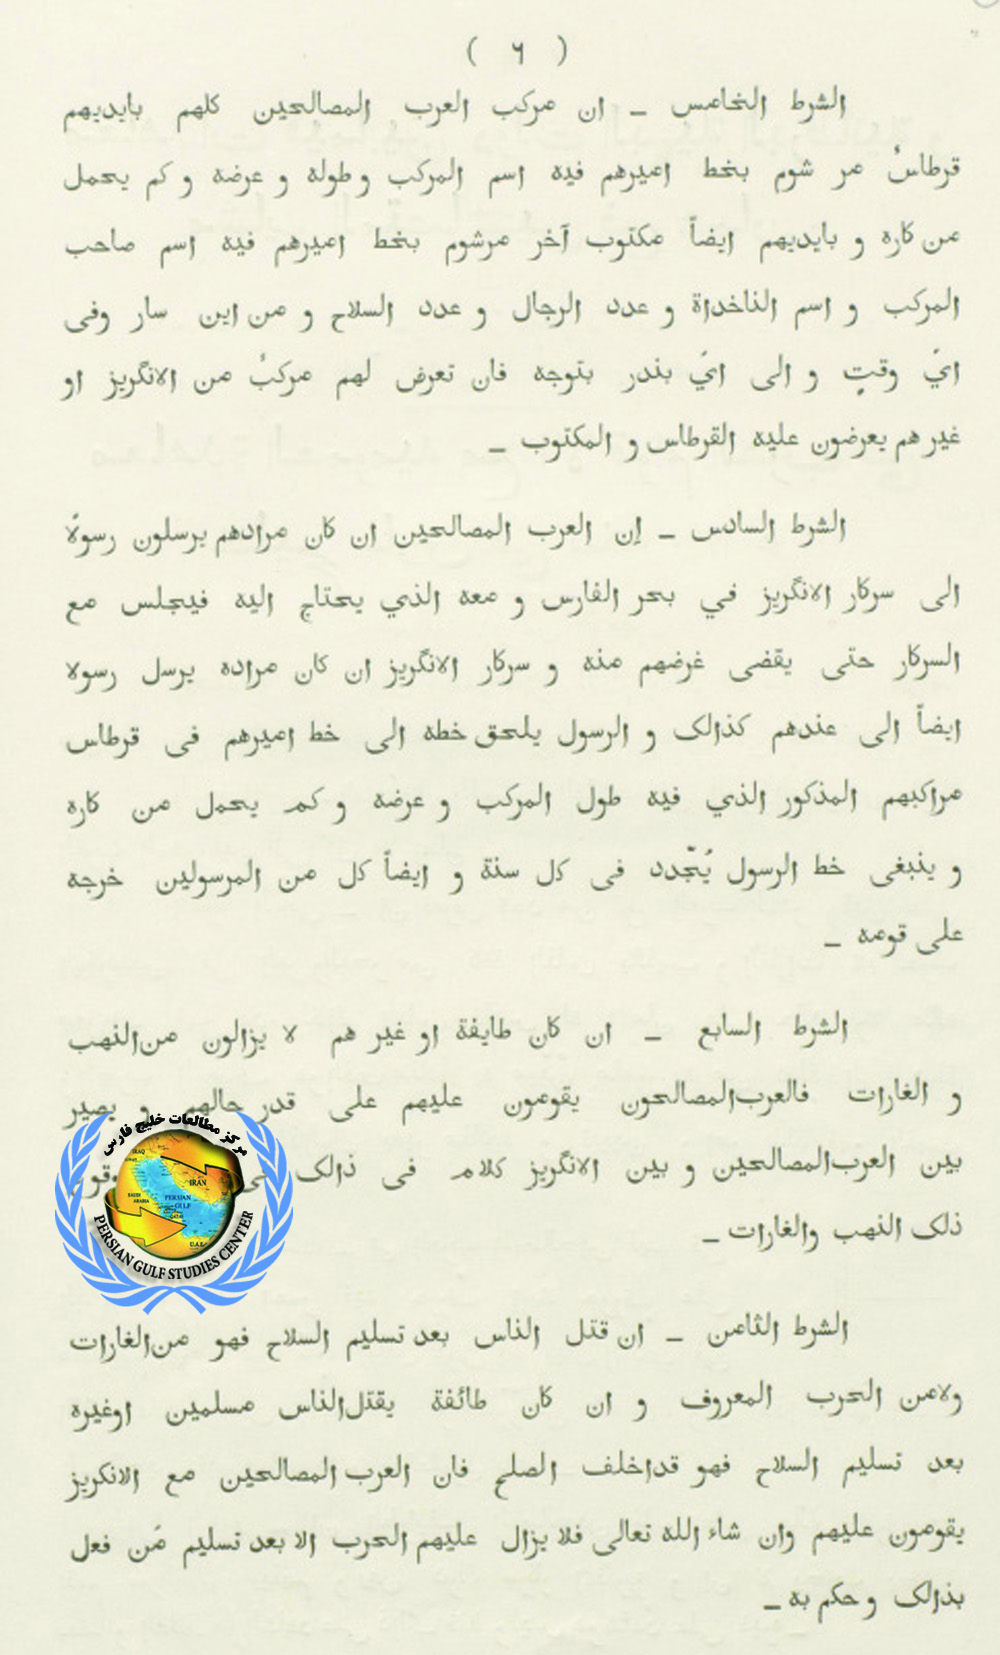 المعاهدة العامة مع الدول العربية في الخليج الفارسي عام 1820م